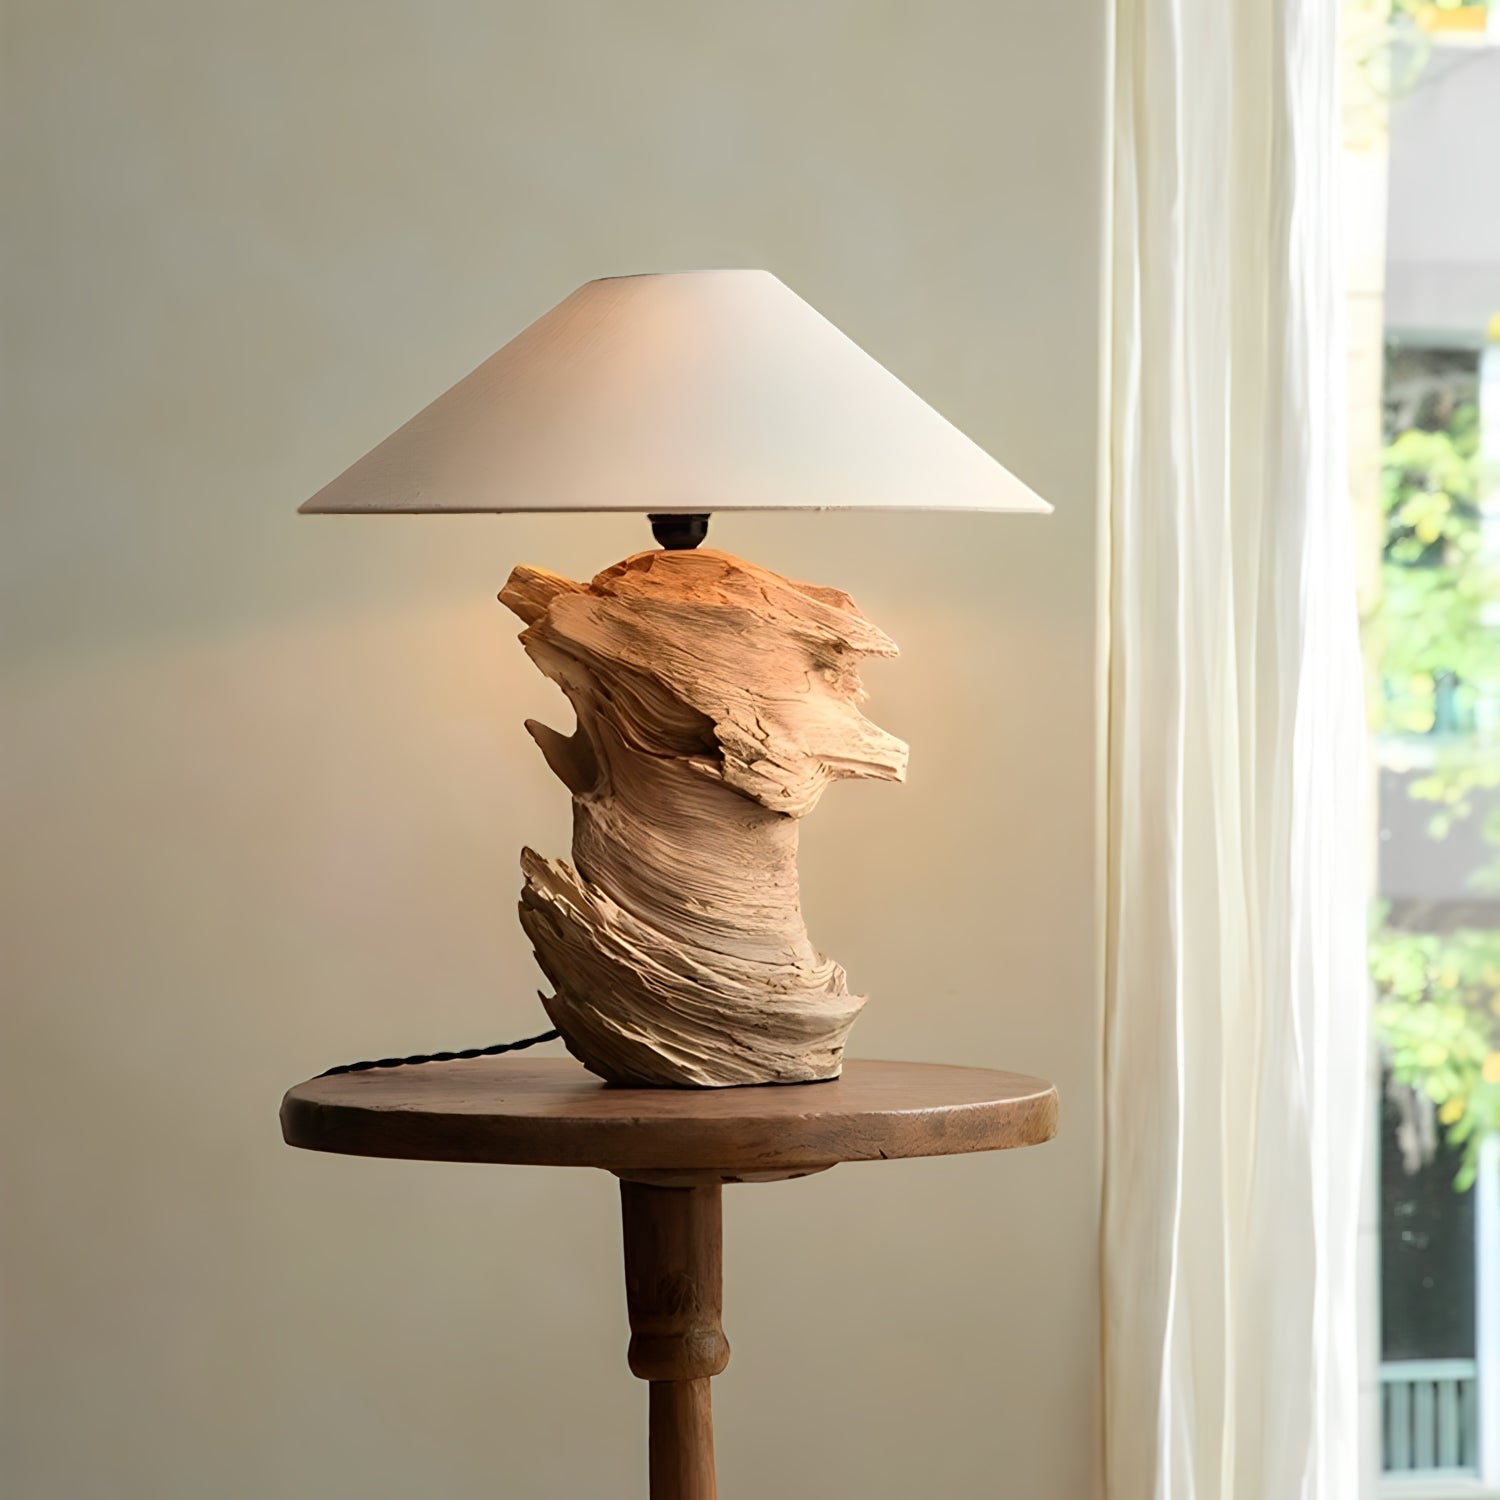 Maßge schneiderte Holz lampe-Pre order